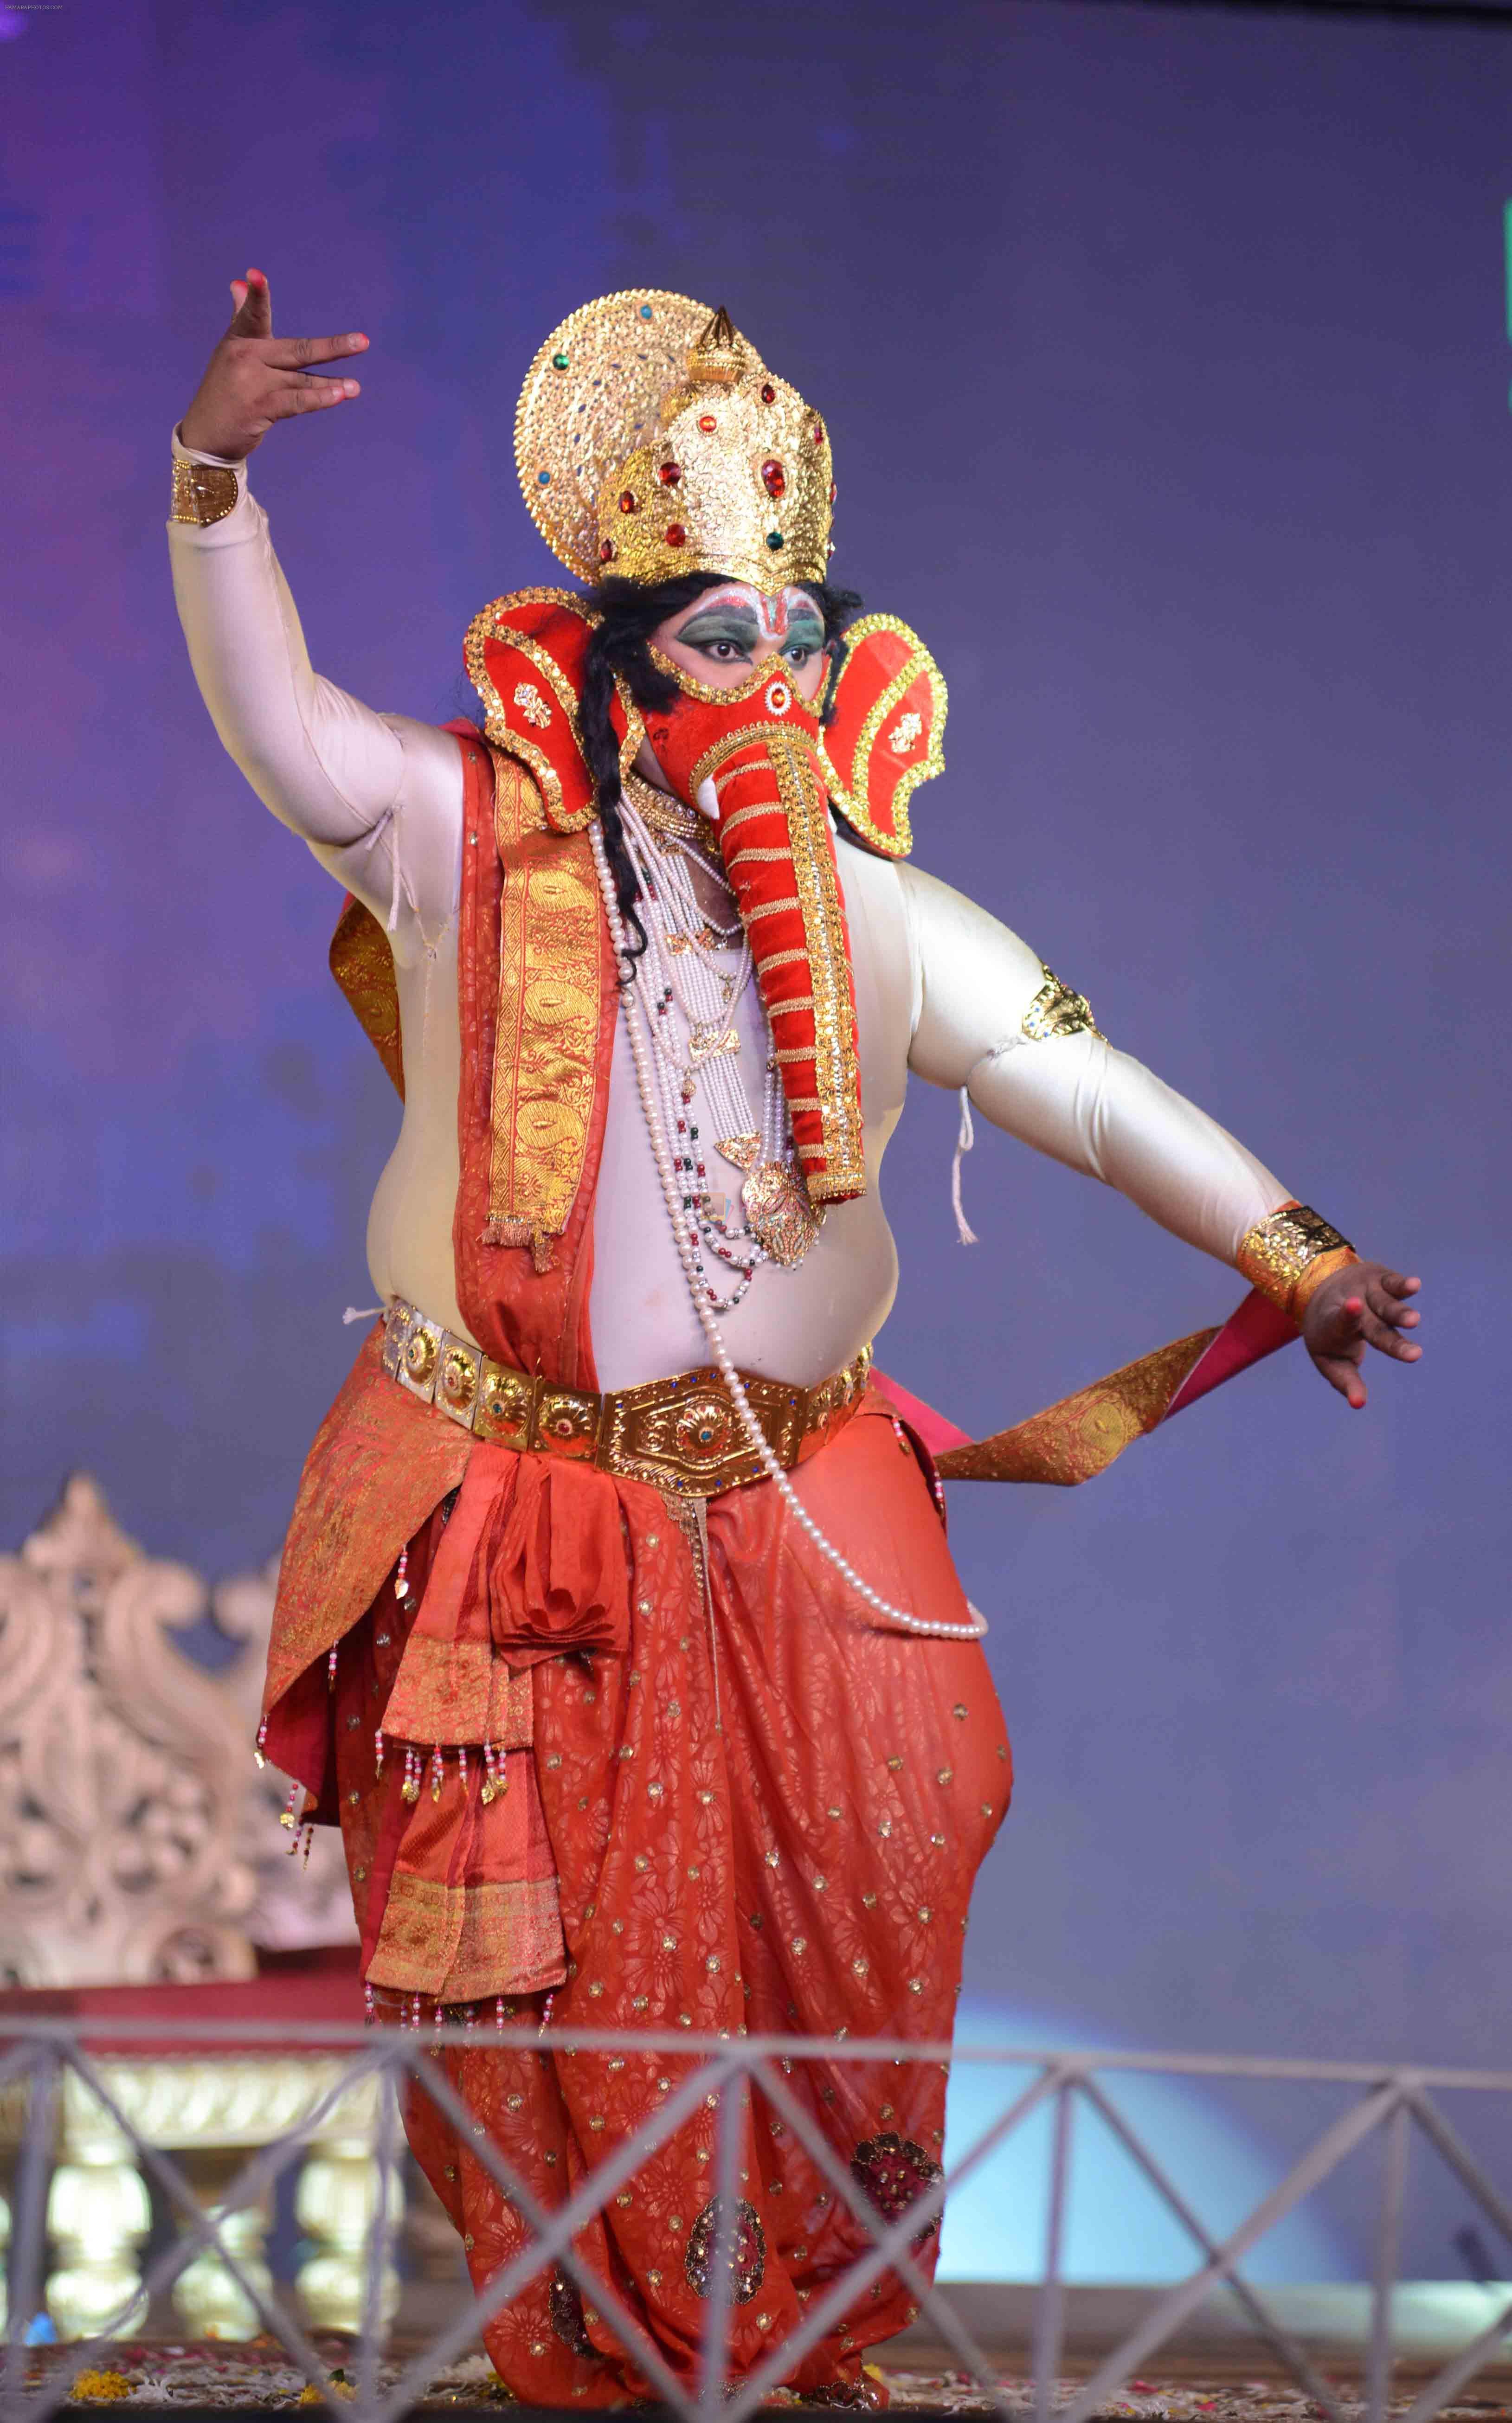 Ganesh Dance in luv kush Ram Leela Playing the Ram leela at Luv Kush ram Leela committee at Lal Qila maidan in Delhi on 13th Oct 2015